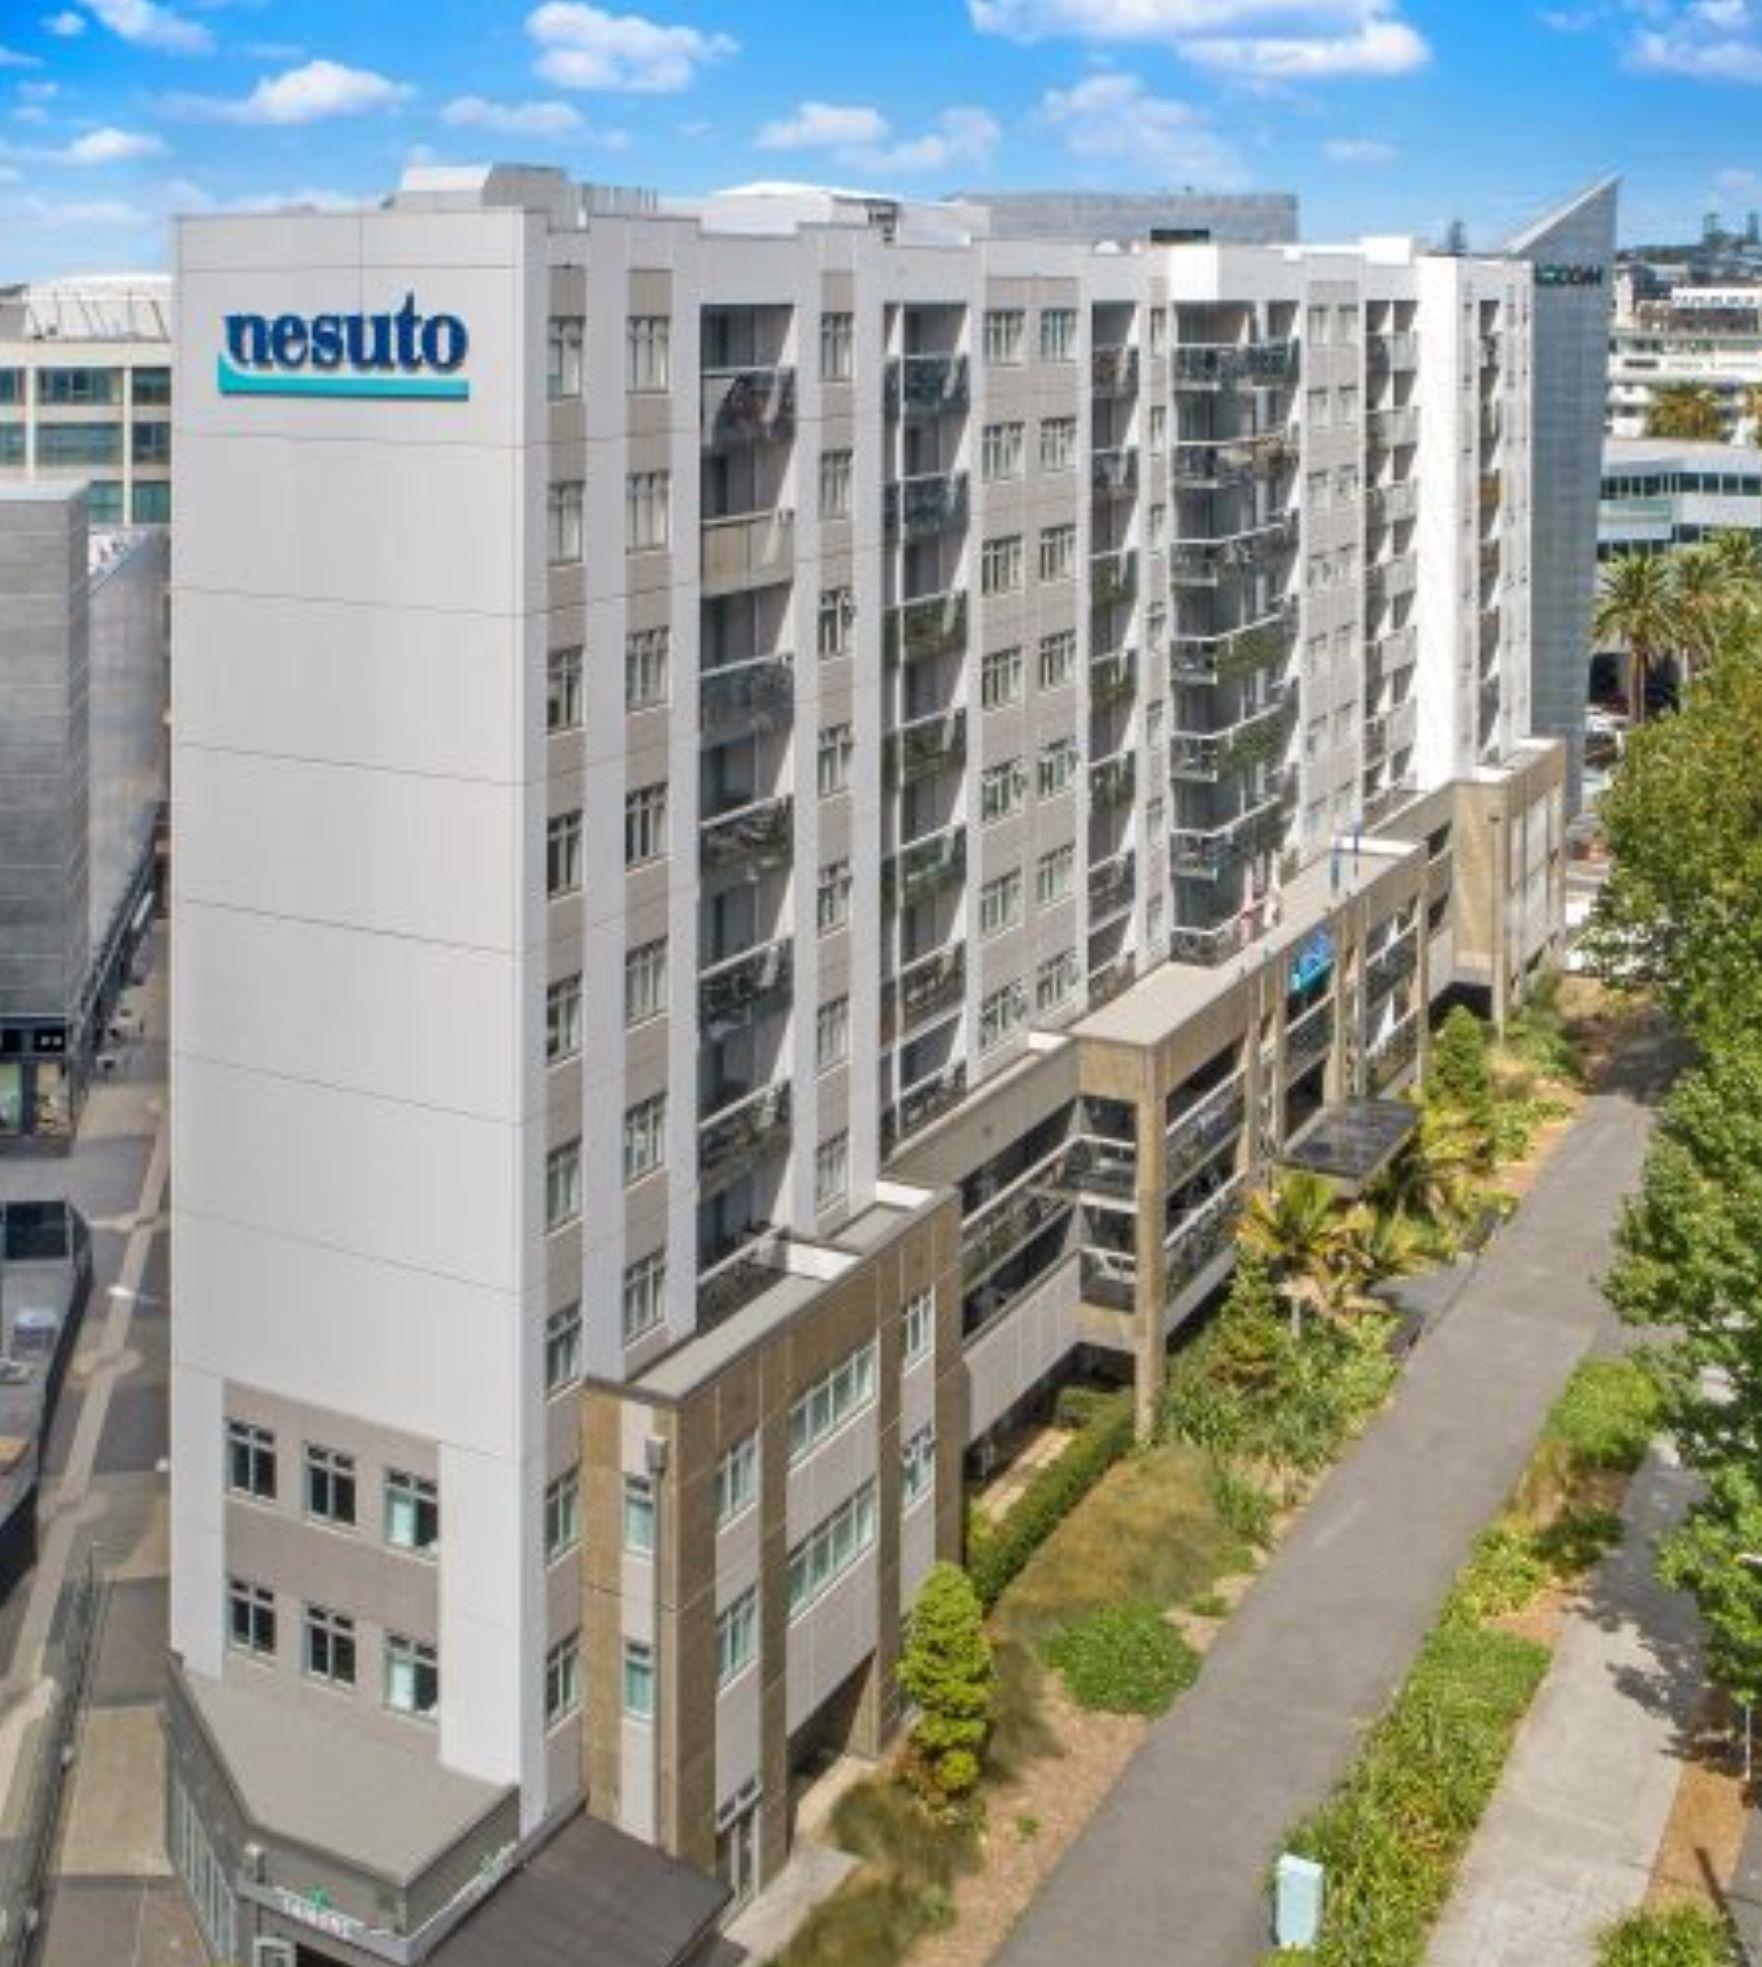 Nesuto Stadium Apartment Hotel in Auckland, NZ